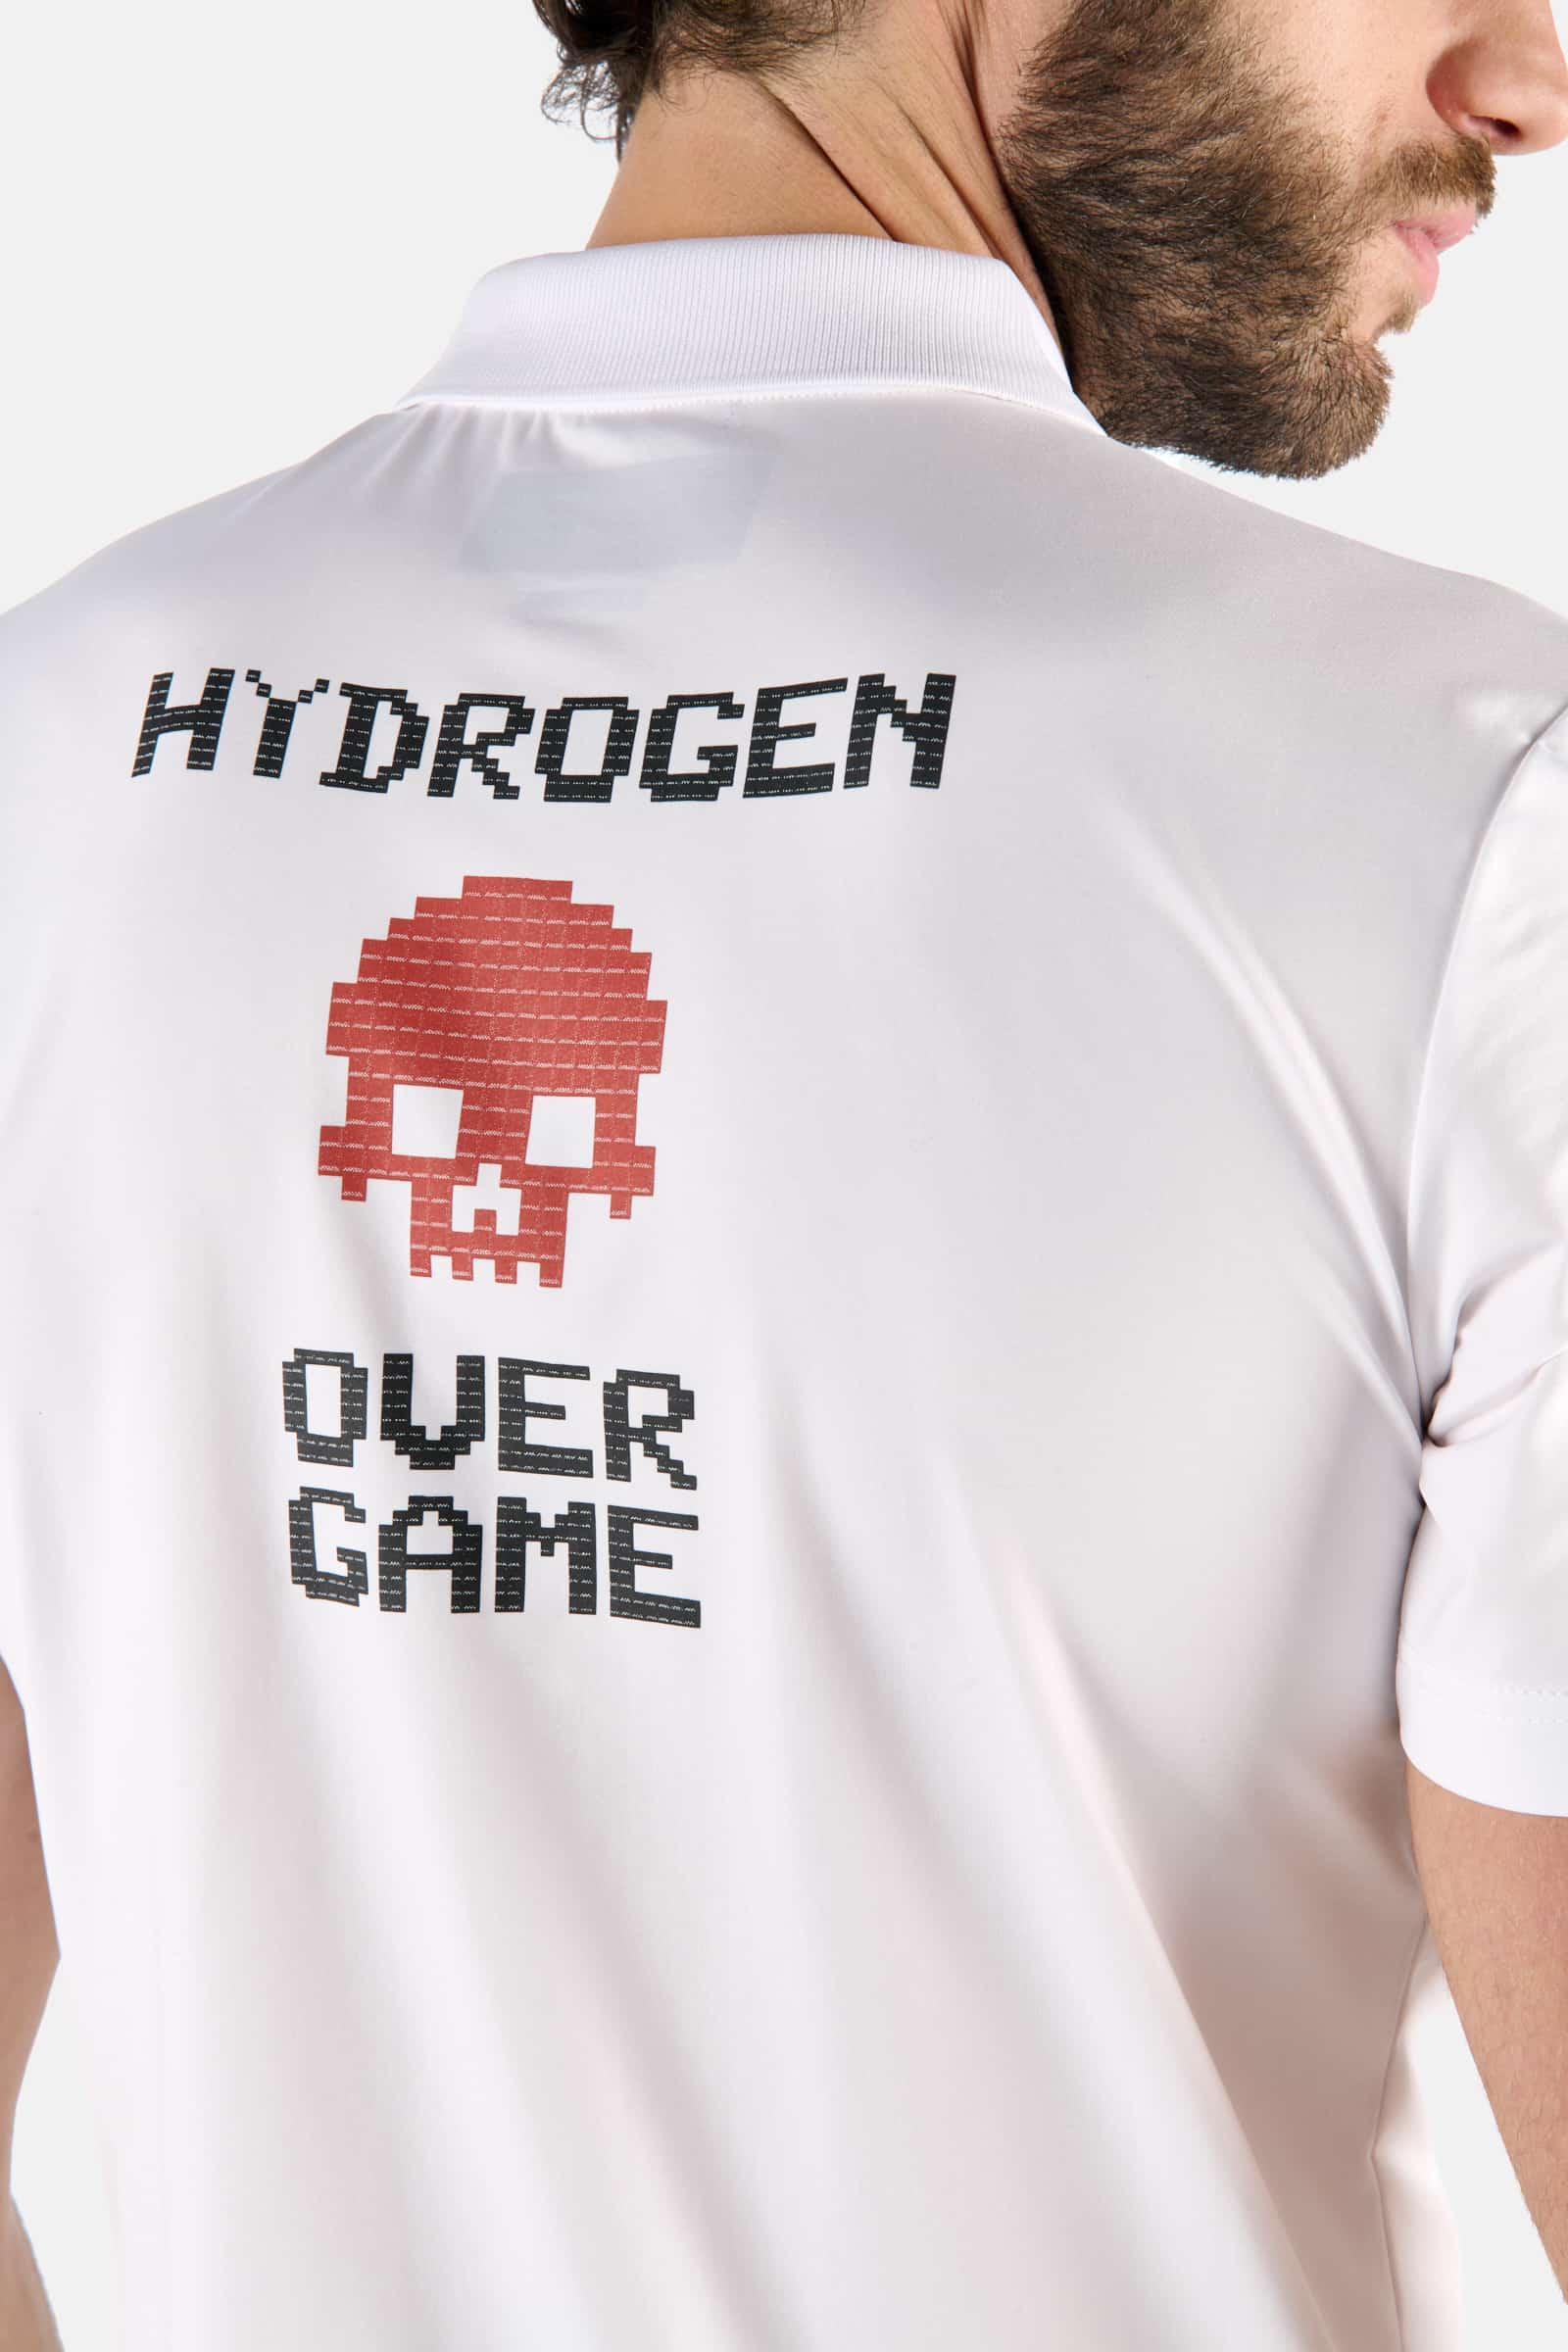 POLO CON STAMPA OVER GAME - WHITE - Abbigliamento sportivo | Hydrogen